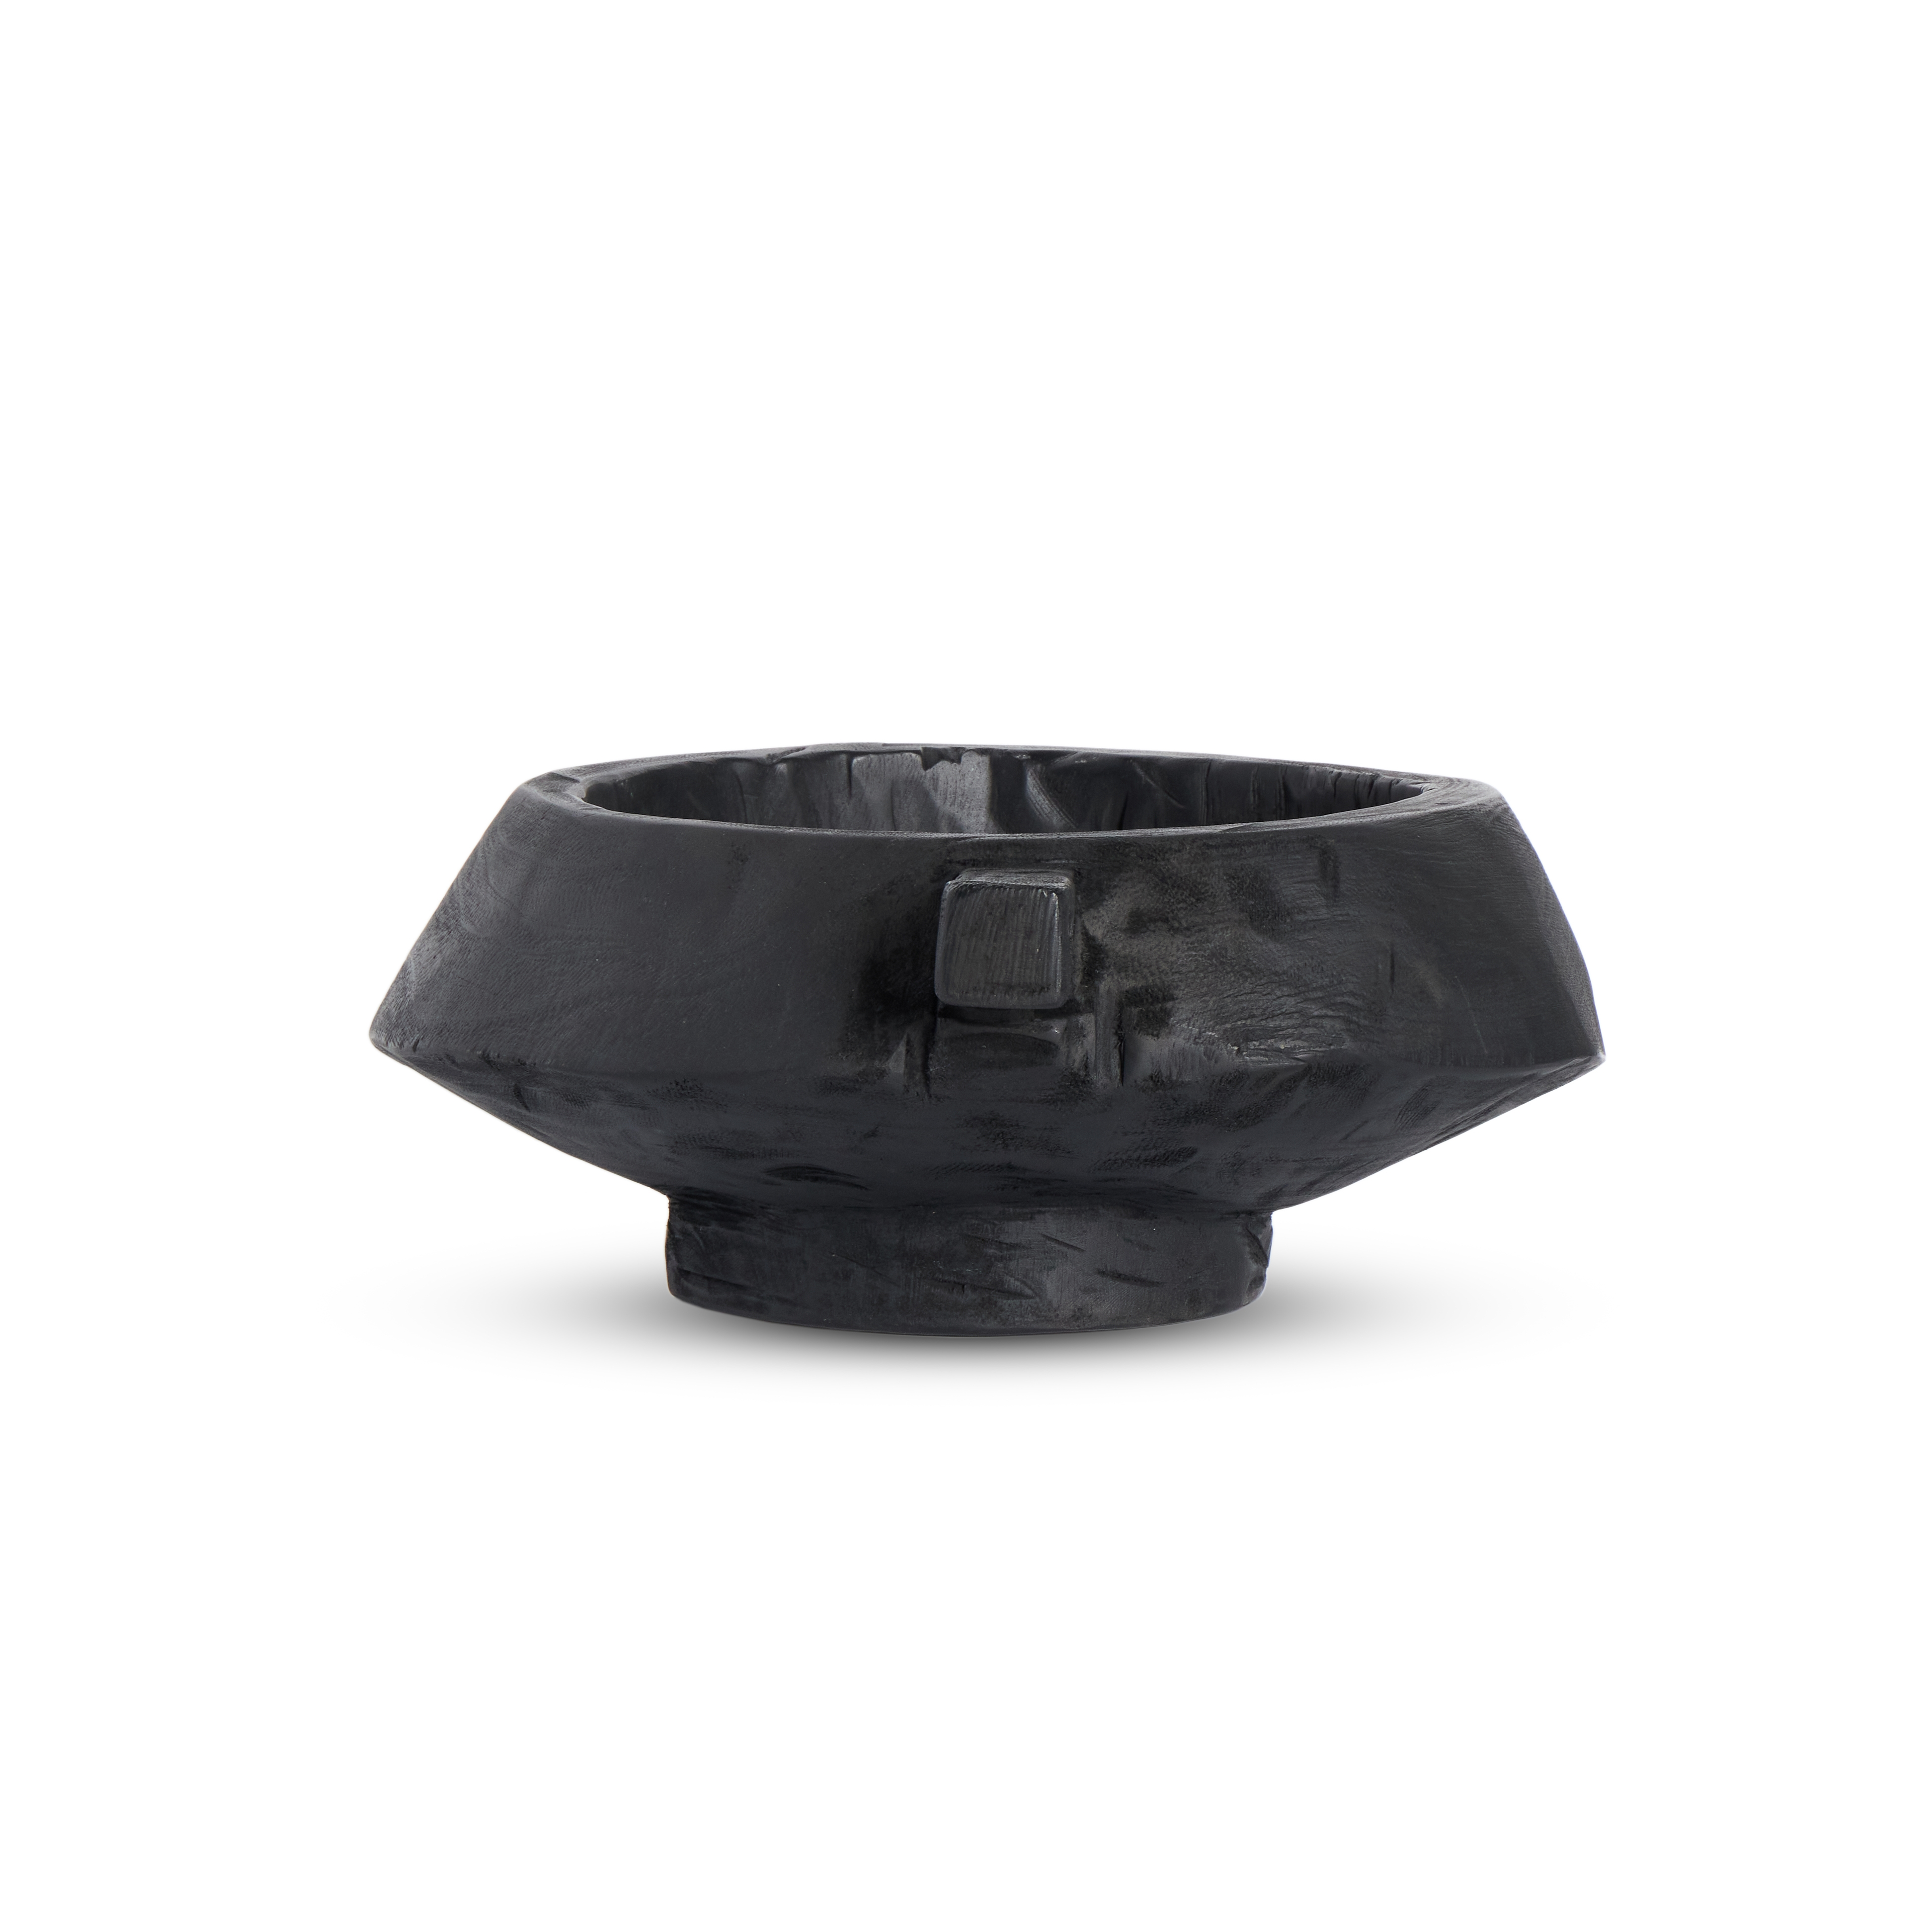 Shaw Bowl-Carbonized Black - Image 3